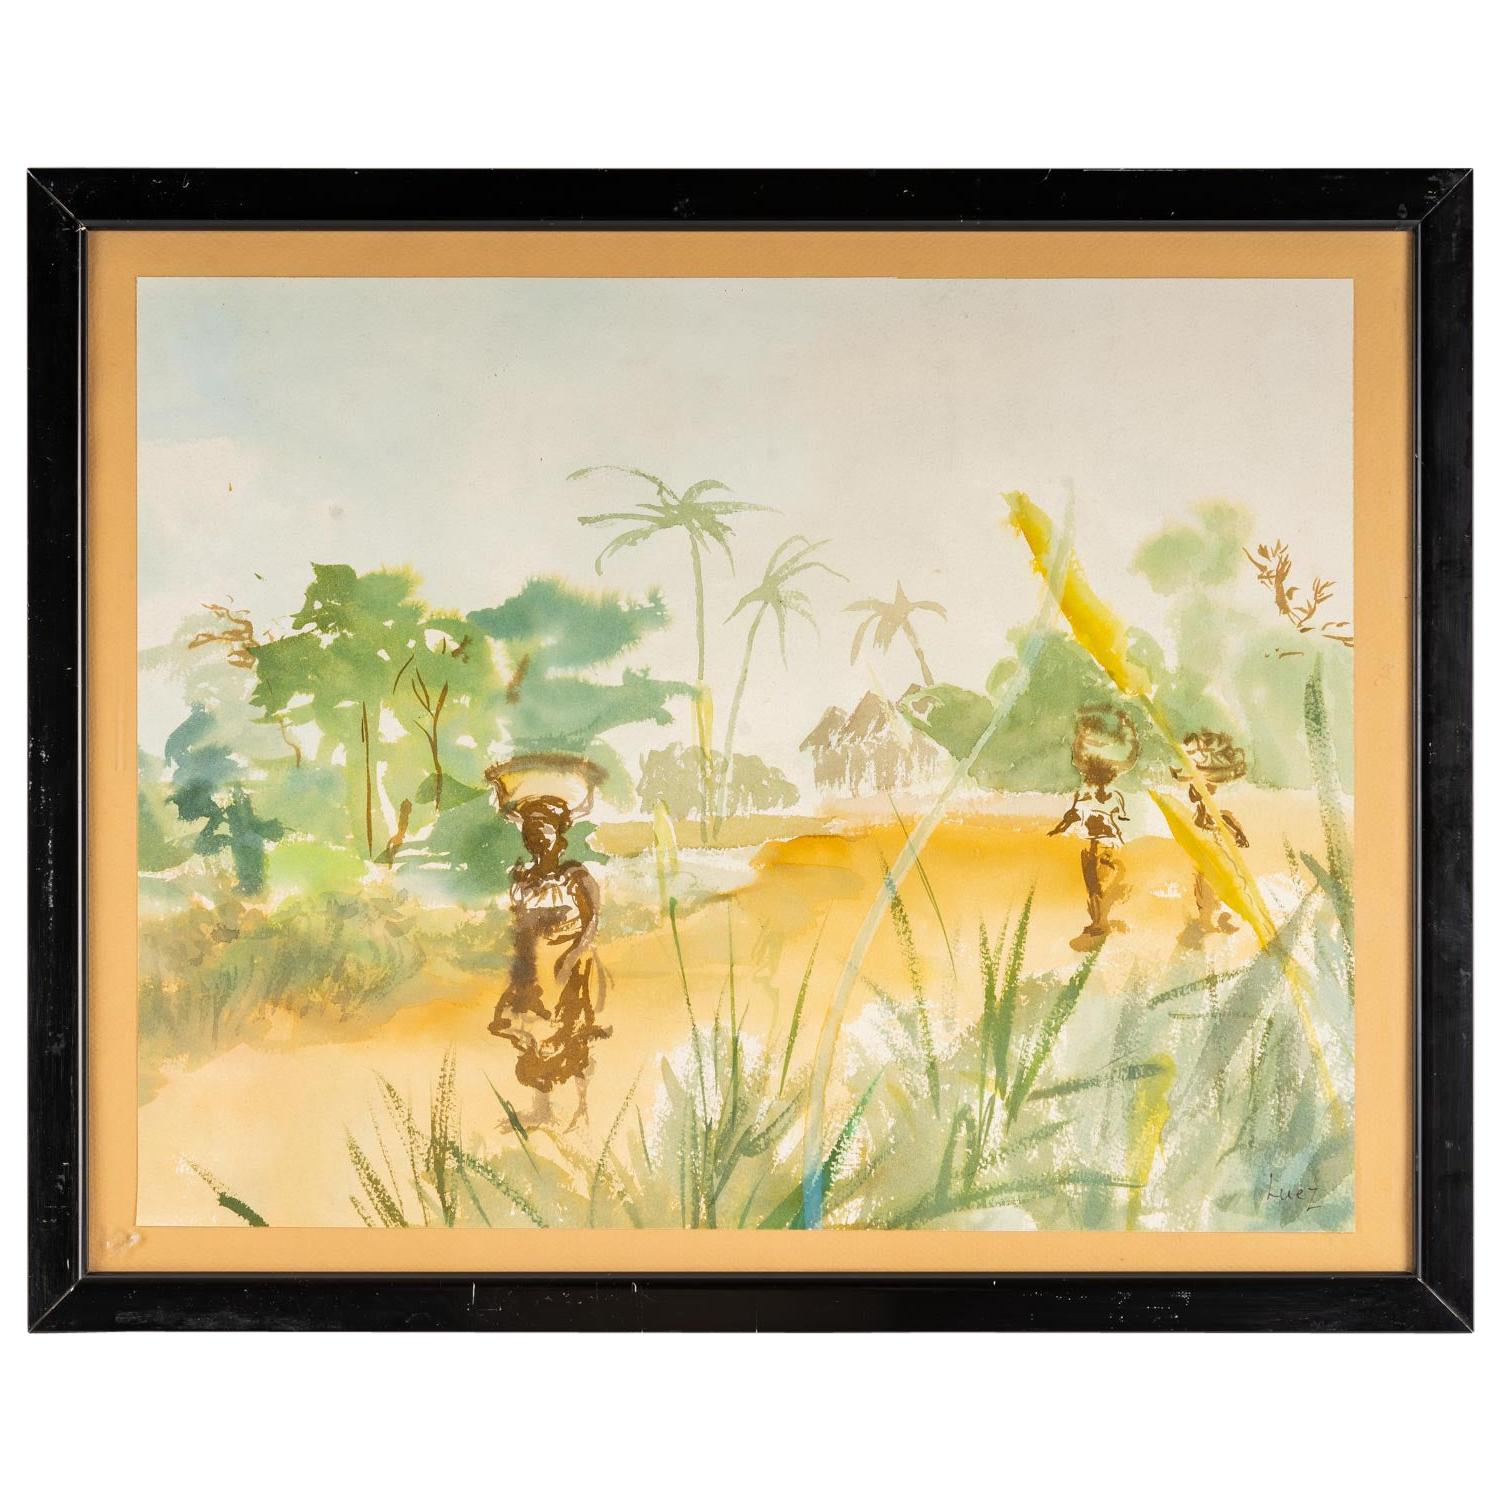 Aquarelle sur papier Luez, paysage africain, encadrée sous verre, 20e siècle.
Mesures : H : 41,5 cm, L : 51,5 cm, P : 3 cm.